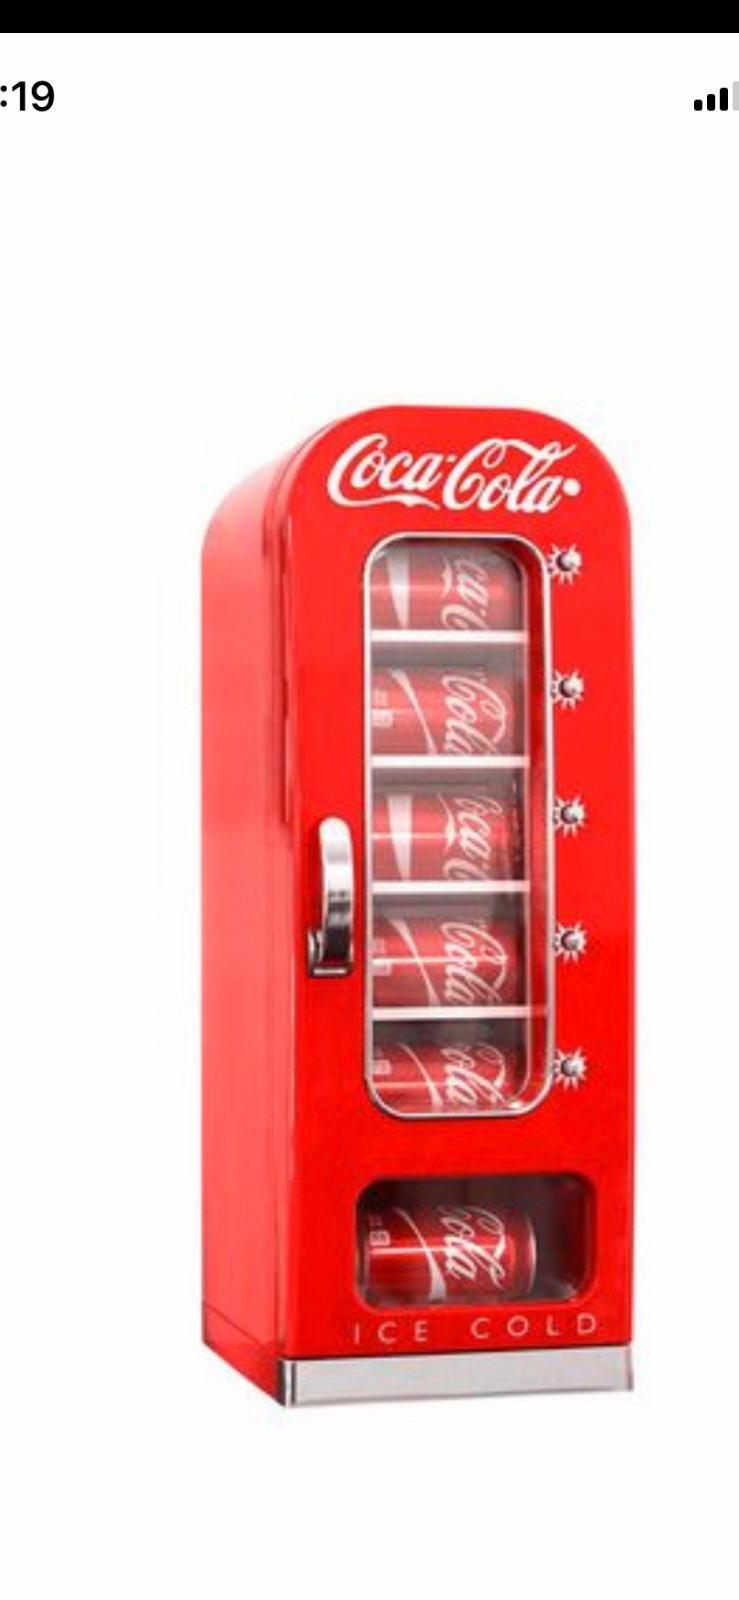 Coke retro cooler for sale  